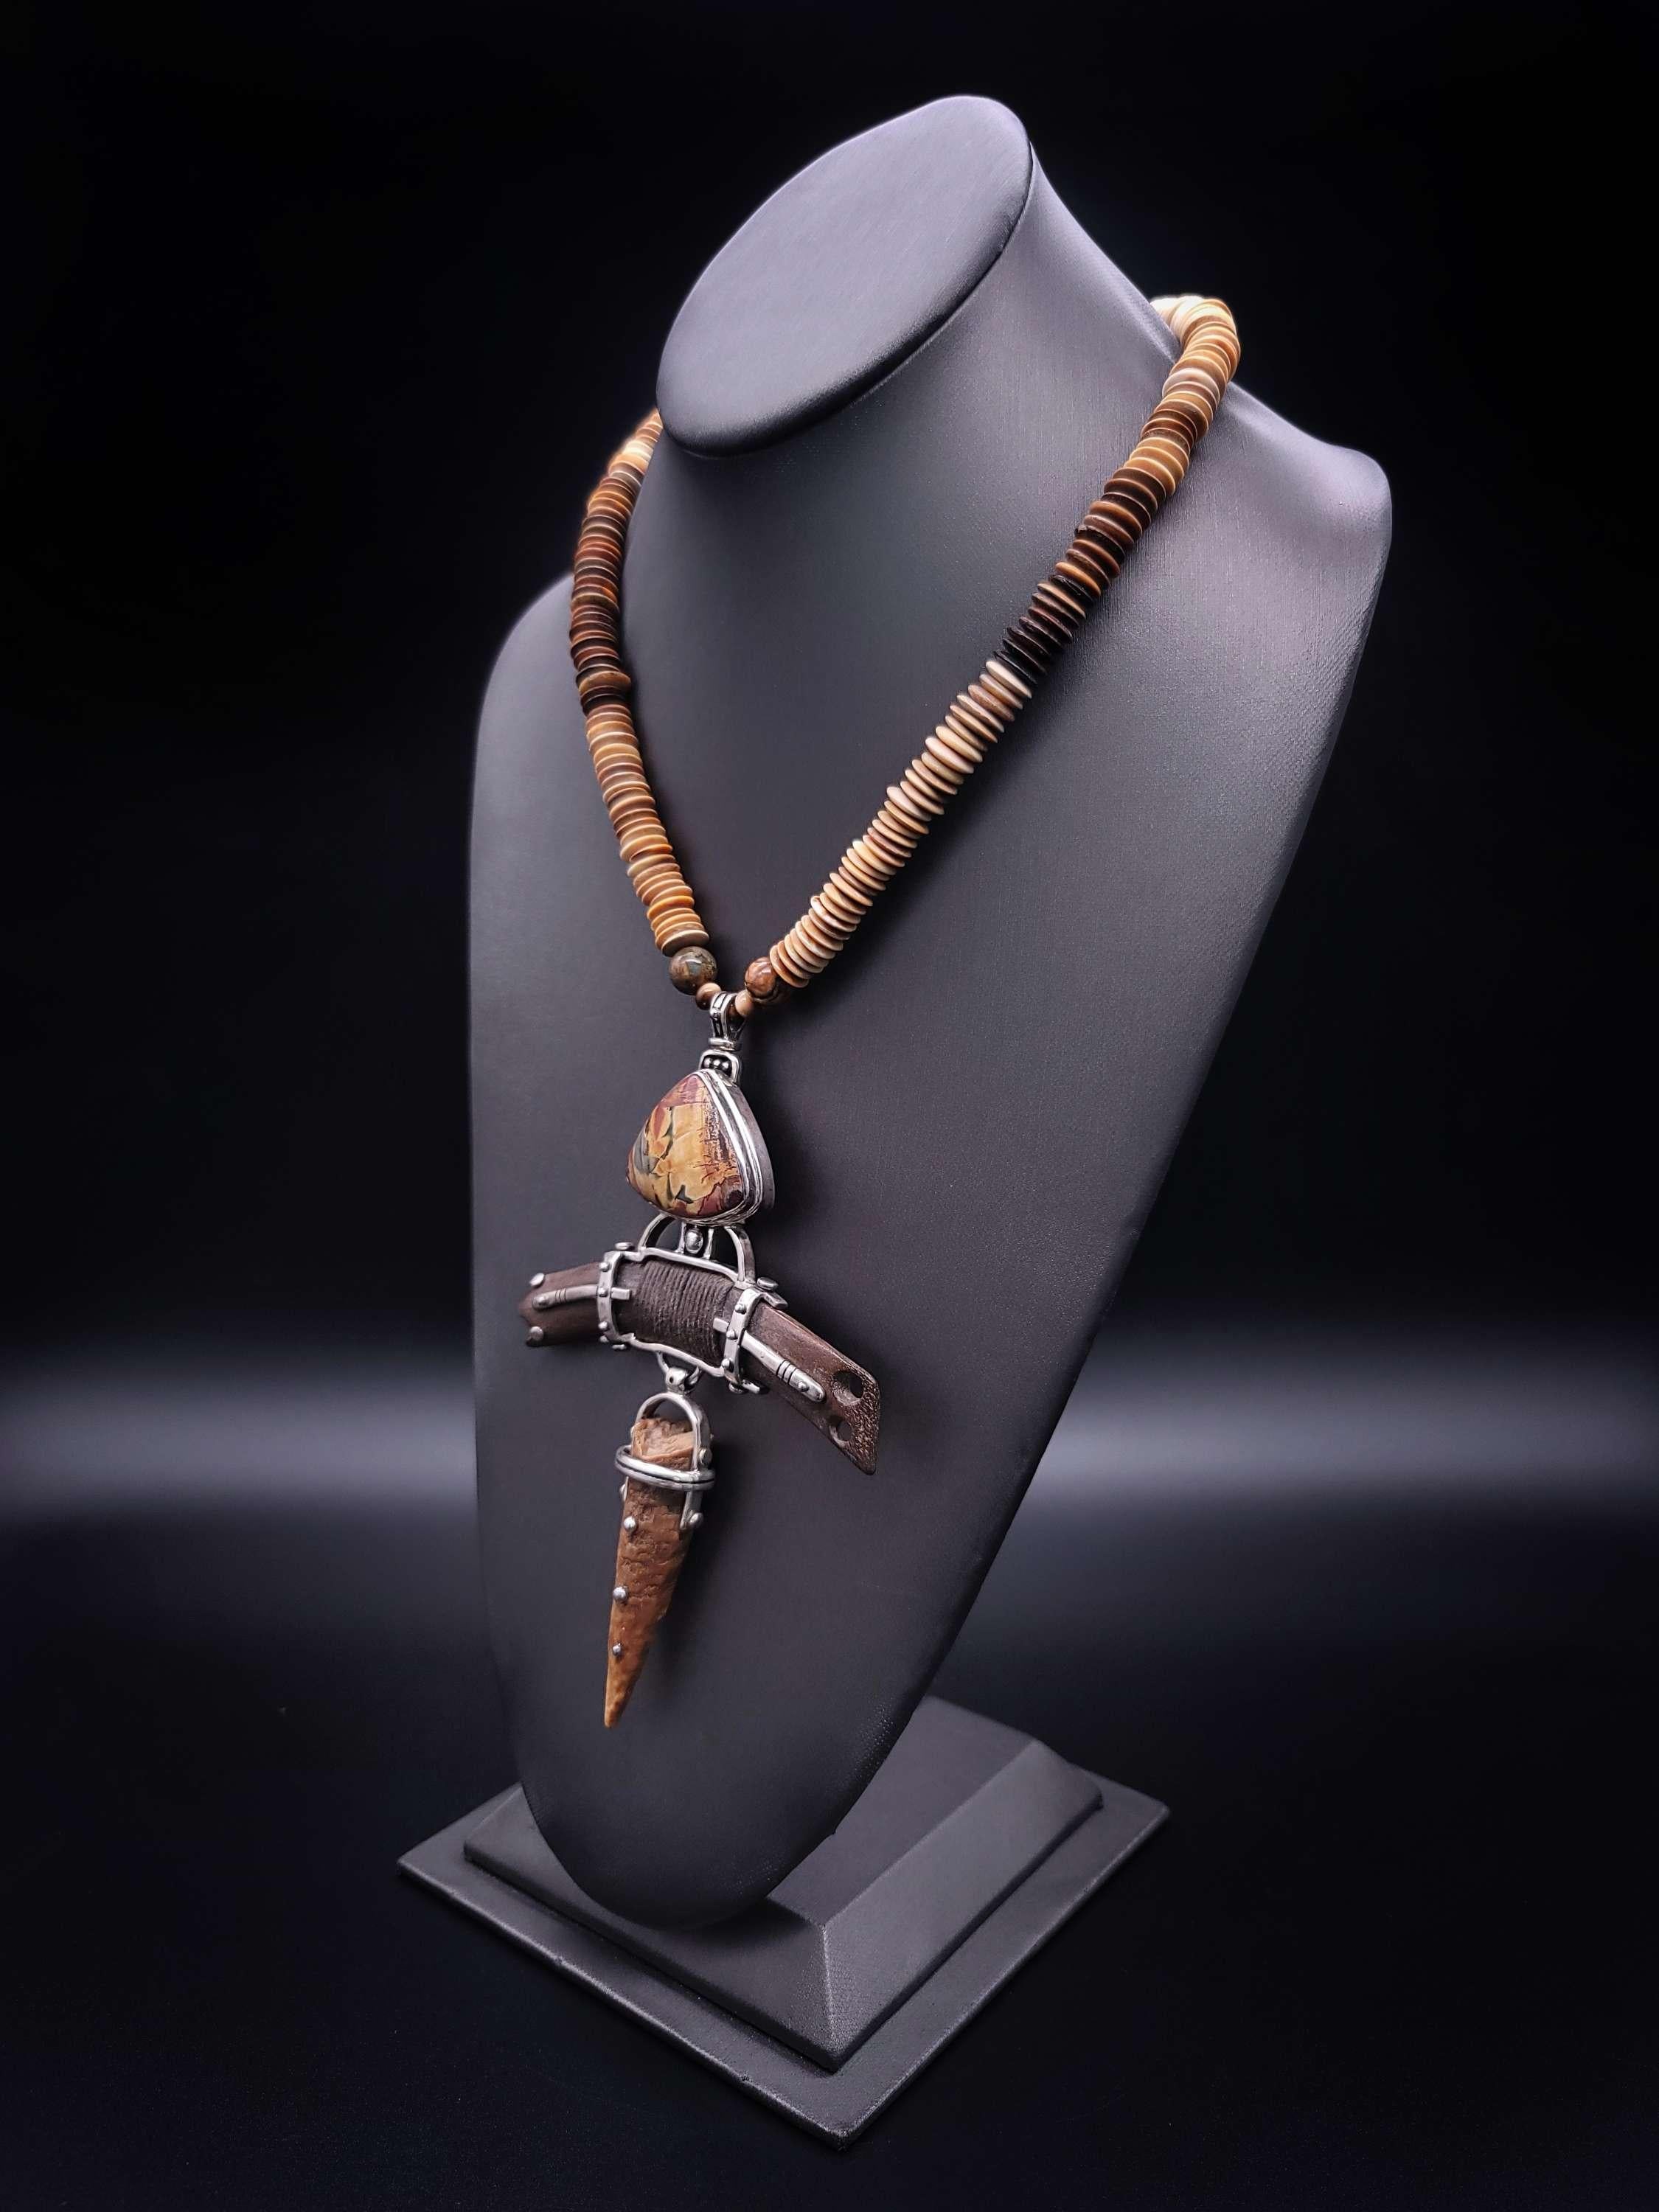 
Wir stellen eine atemberaubende, einzigartige Halskette vor, die Eleganz und Raffinesse ausstrahlt. Dieses Stück ist aus exquisiten Tabak-Jade- und Jaspis-Perlen gefertigt, die wunderschön mit Fossil-Perlen durchsetzt sind und ein einzigartiges und